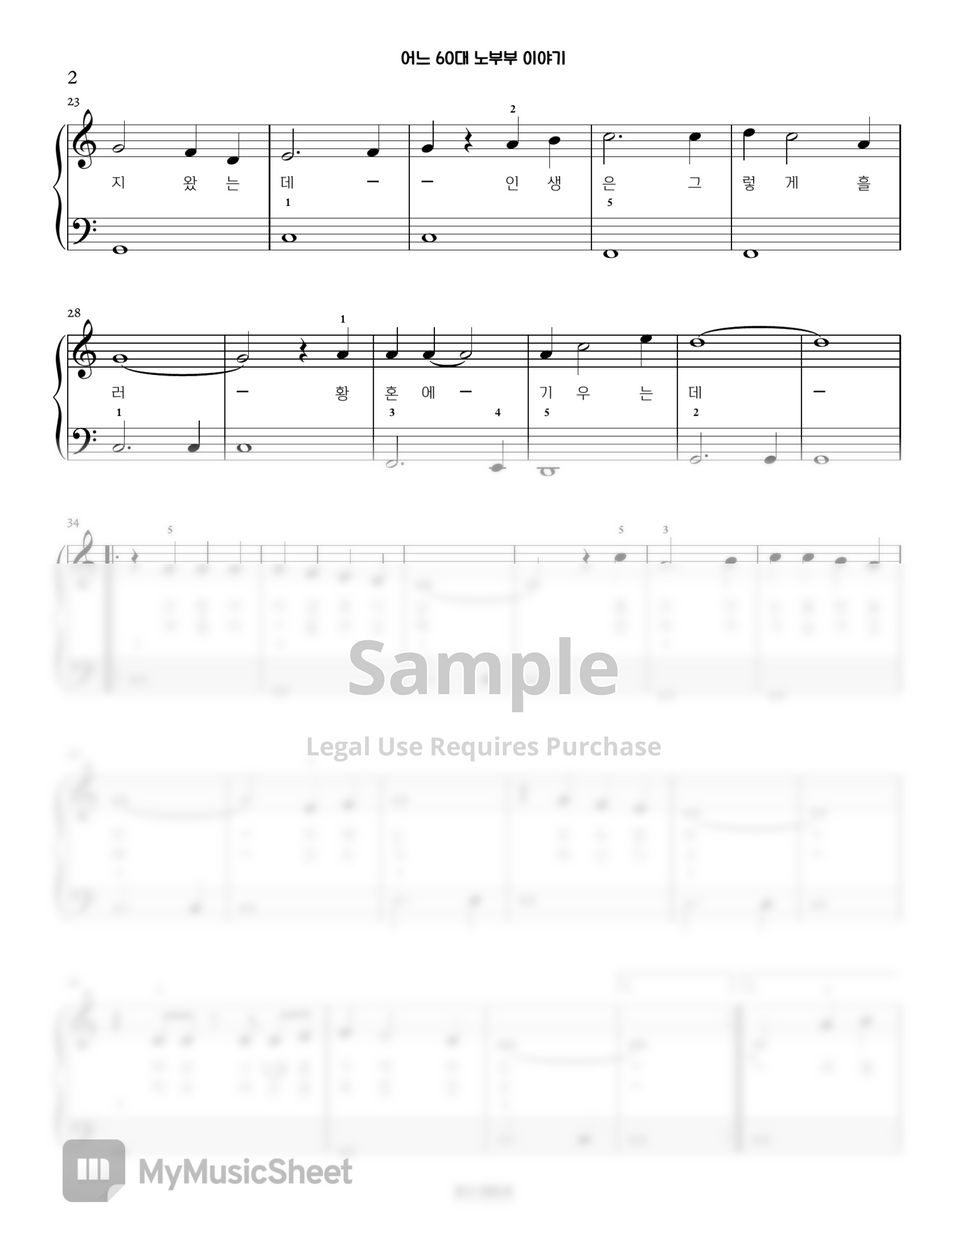 김목경 - 어느 60대 노부부 이야기 | Piano Arrangement in C major (임영웅) by PianoSSam